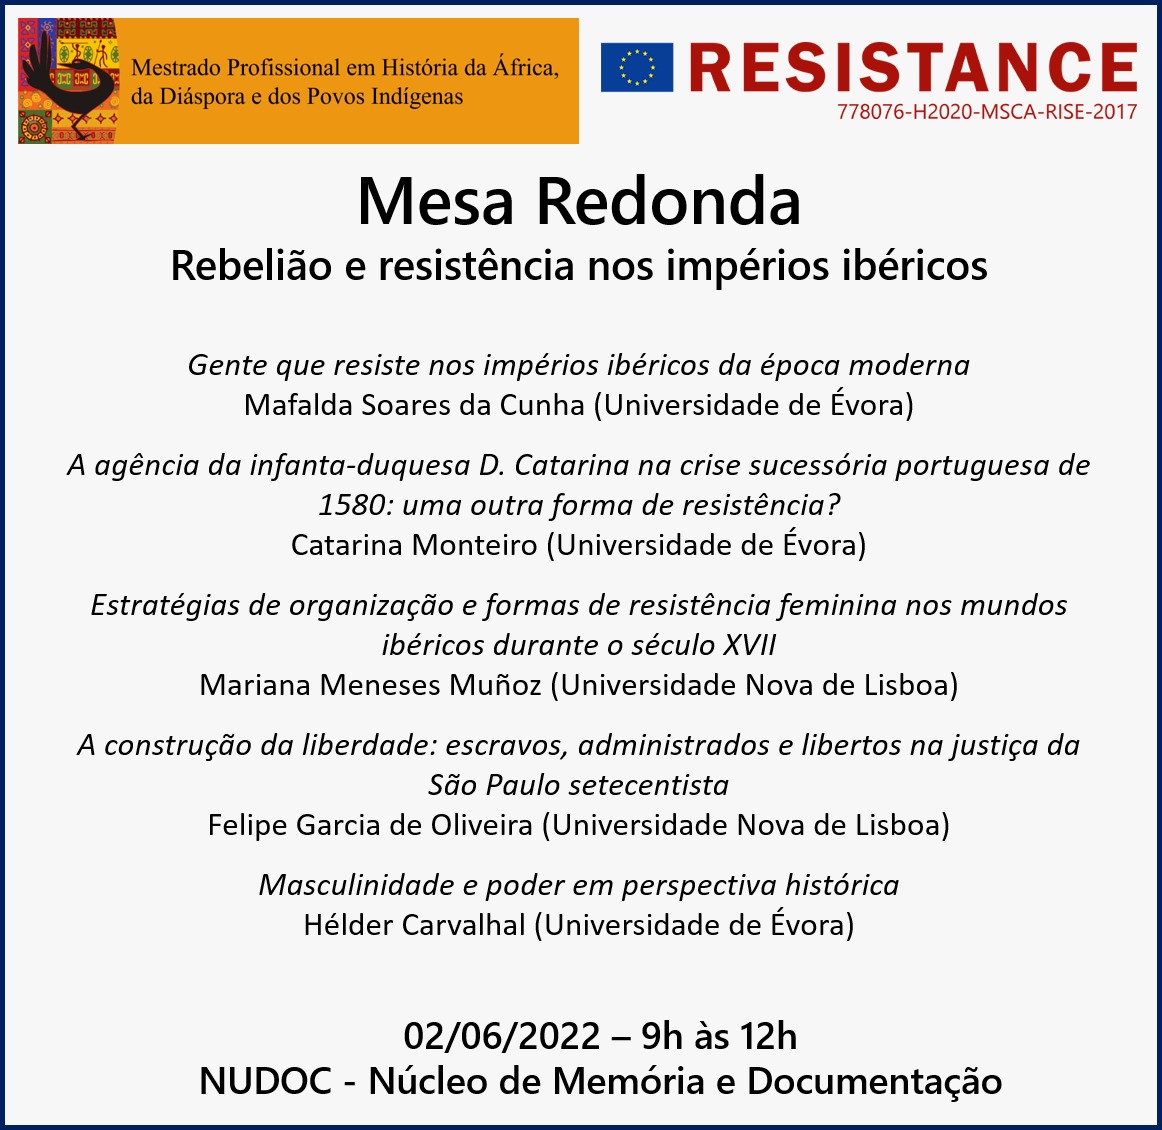 Rebeliao e resistencia 3